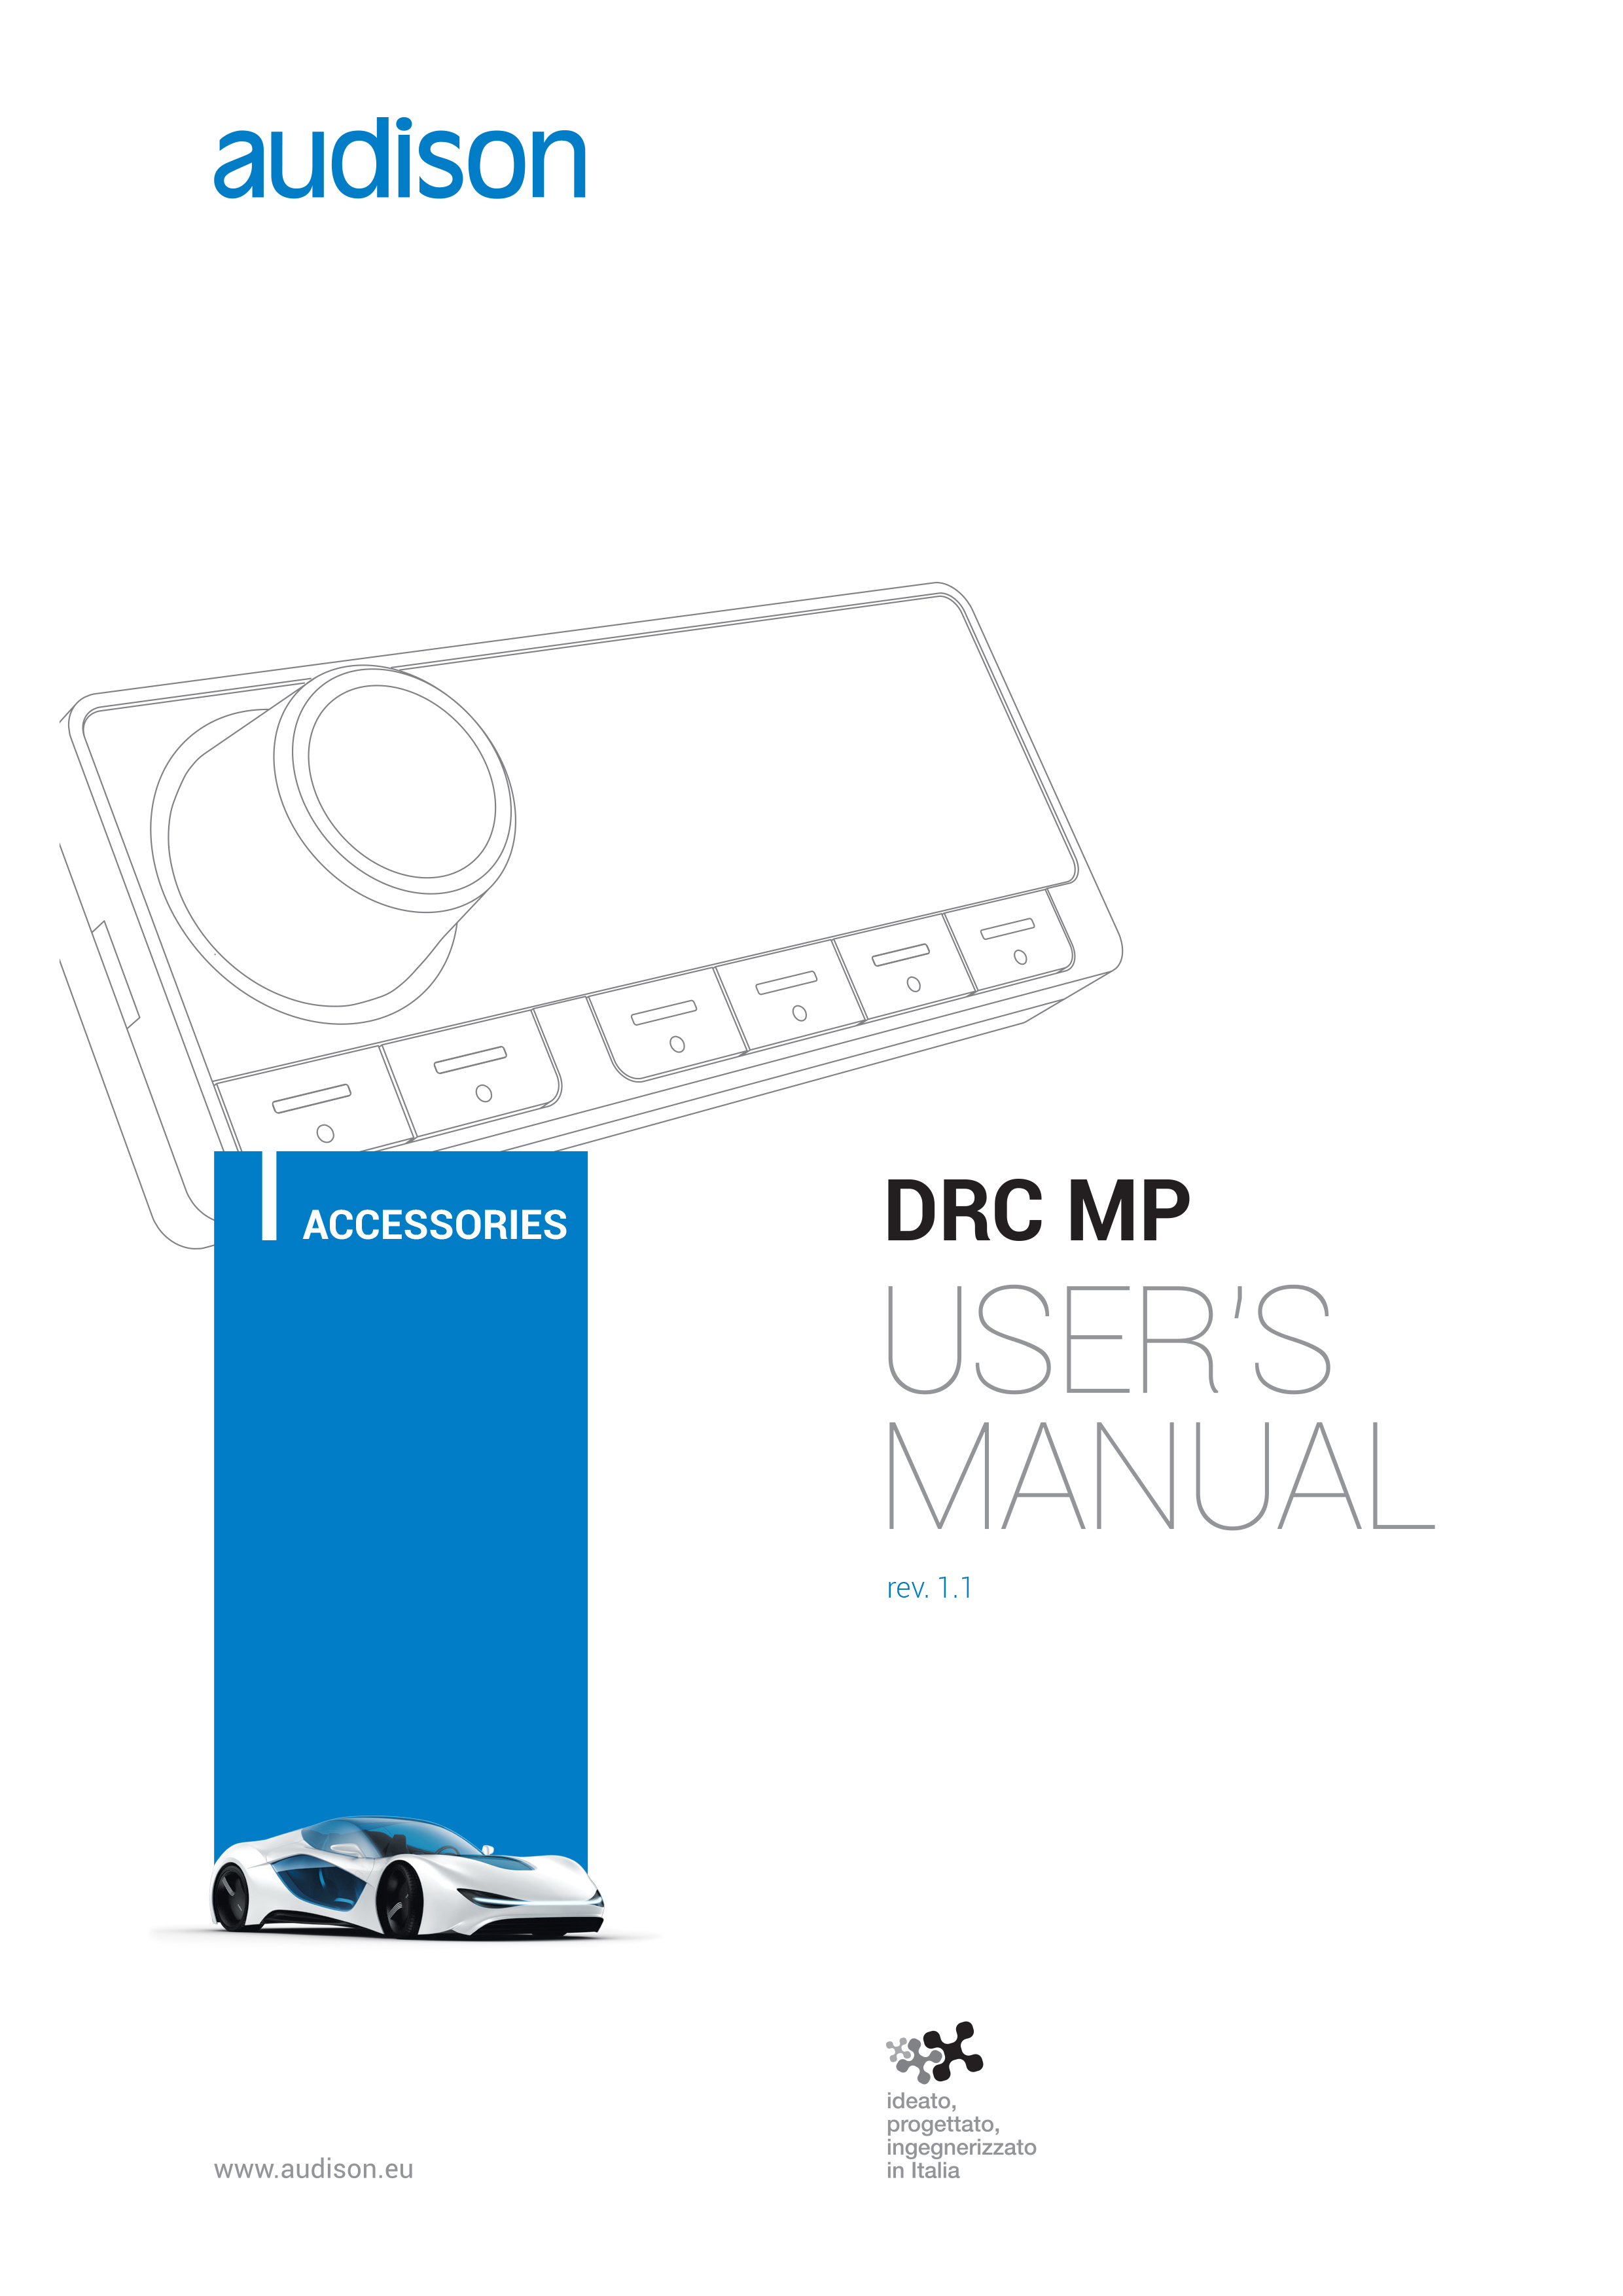 User_s_manual_DRC-MP_rev1.1-1.jpg